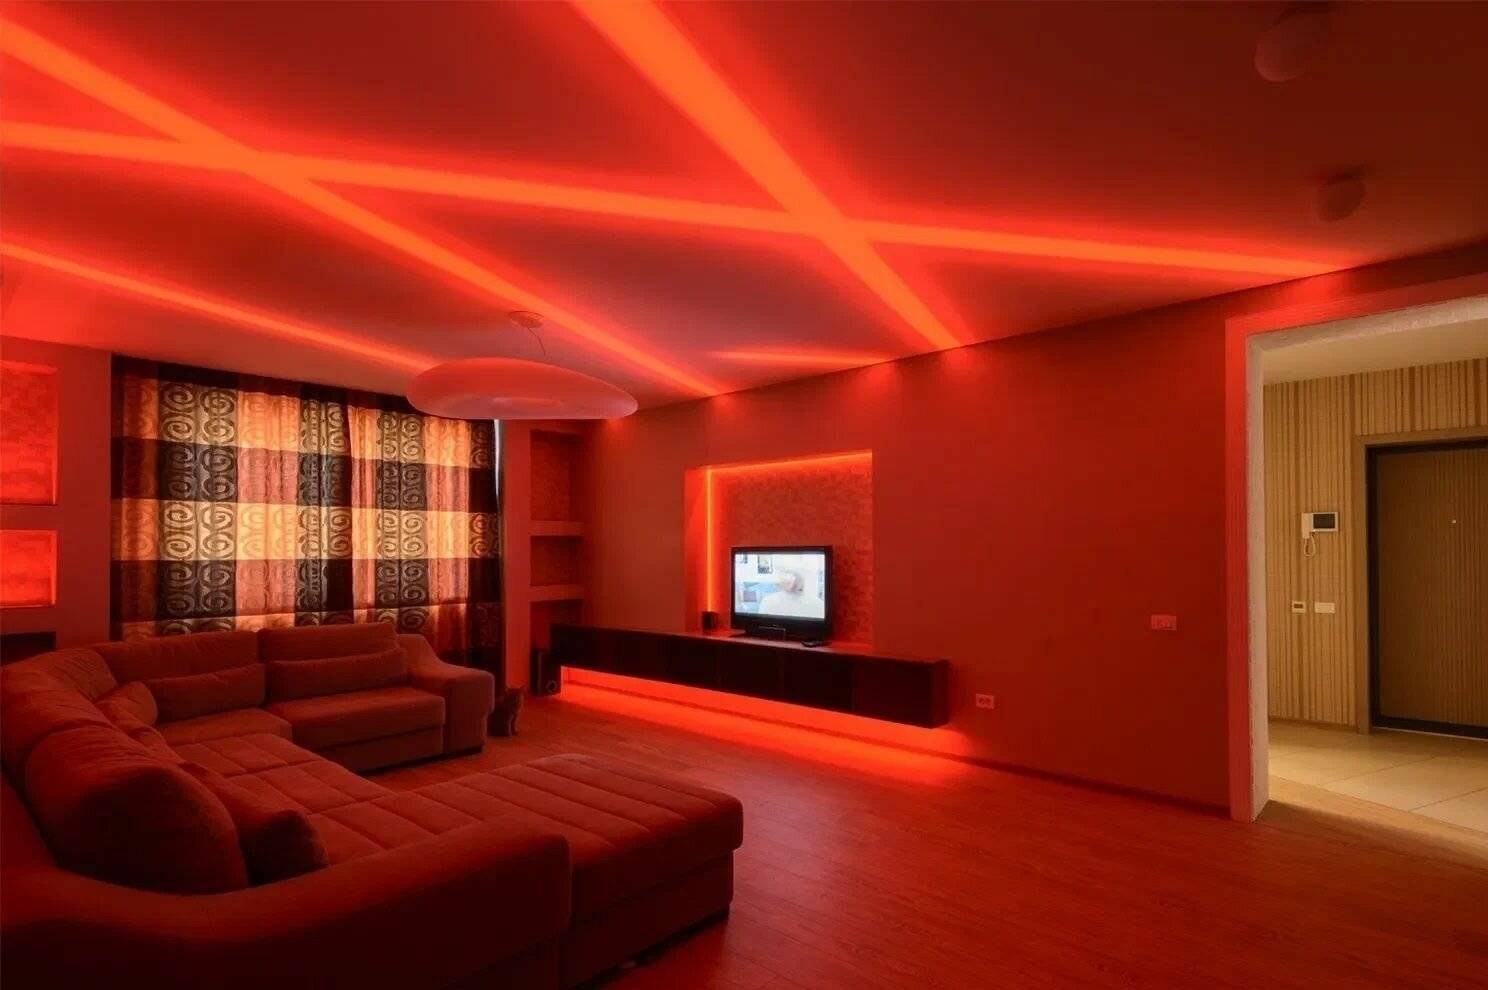 Какой свет нужен в комнате. Светодиодная подсветка в интерьере. Потолок с подсветкой. Светодиодные ленты в интерьере квартиры. Комната с красной подсветкой.